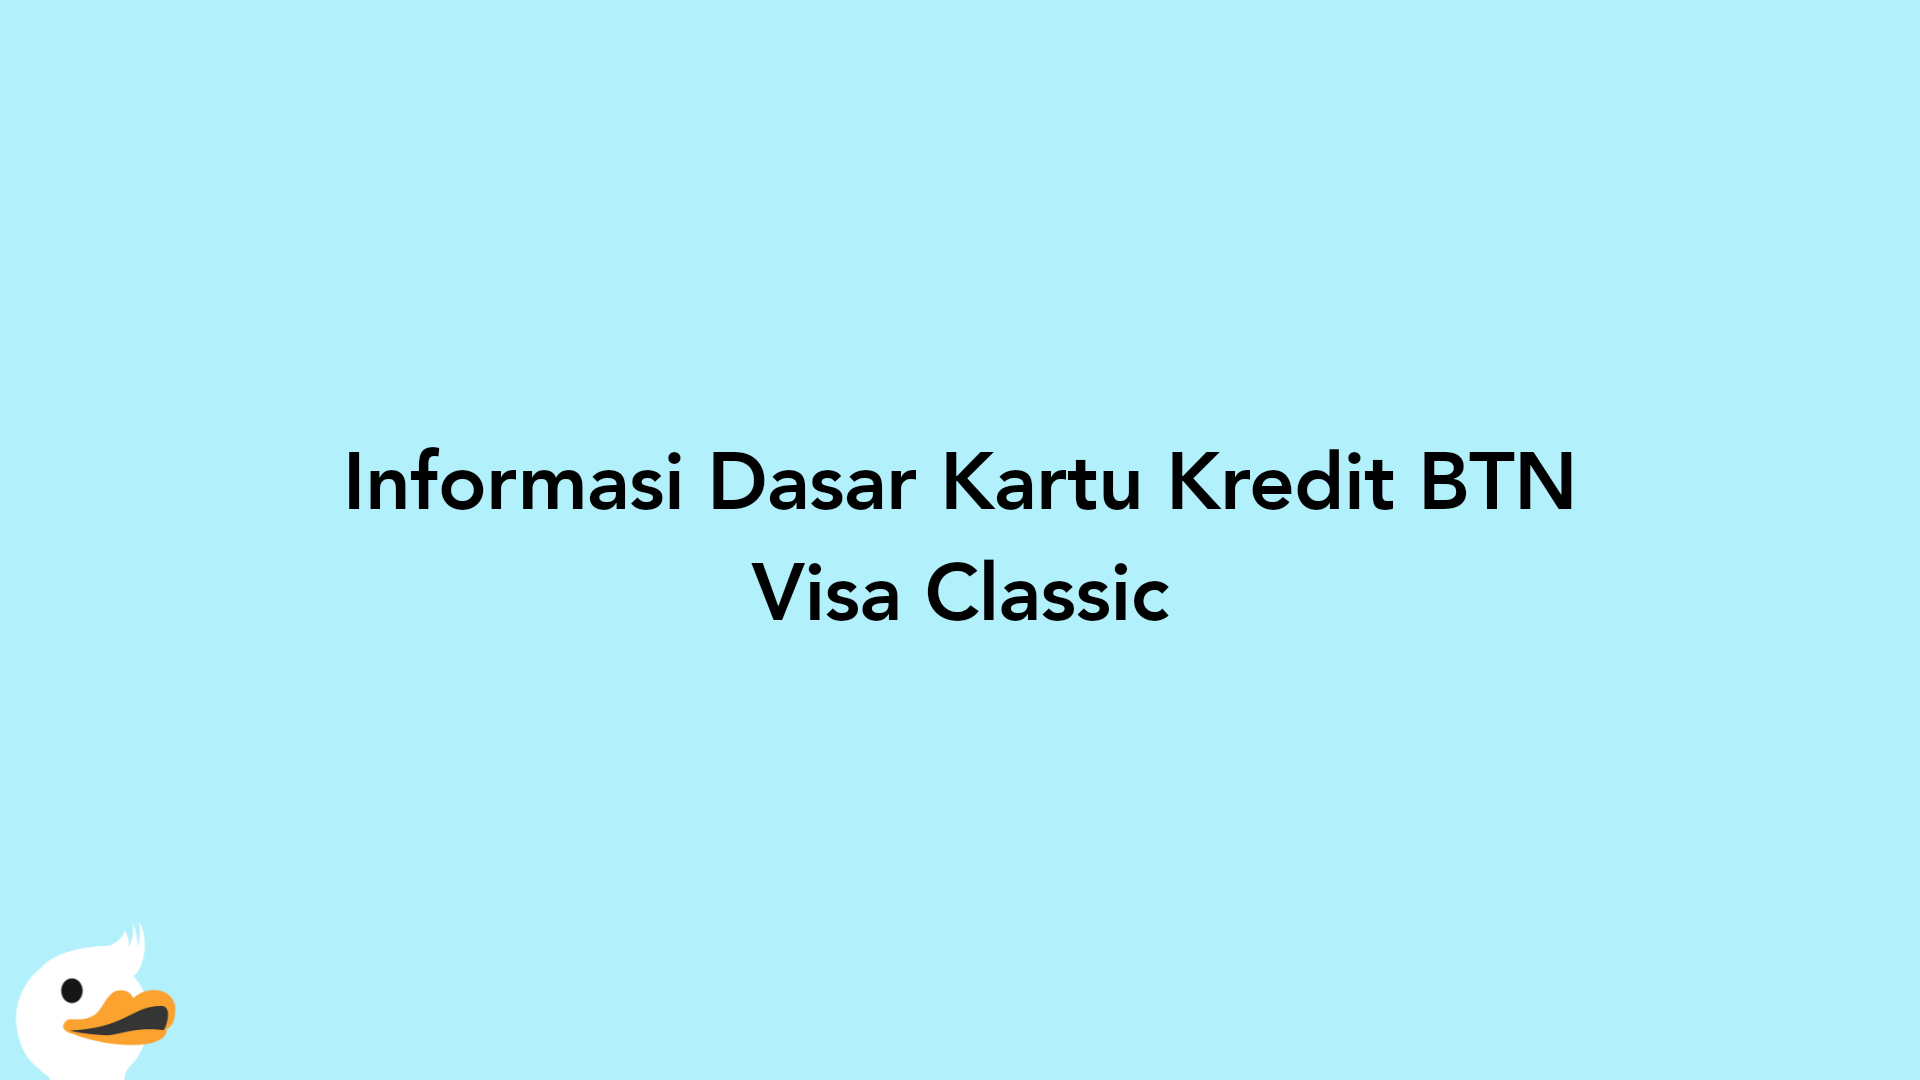 Informasi Dasar Kartu Kredit BTN Visa Classic